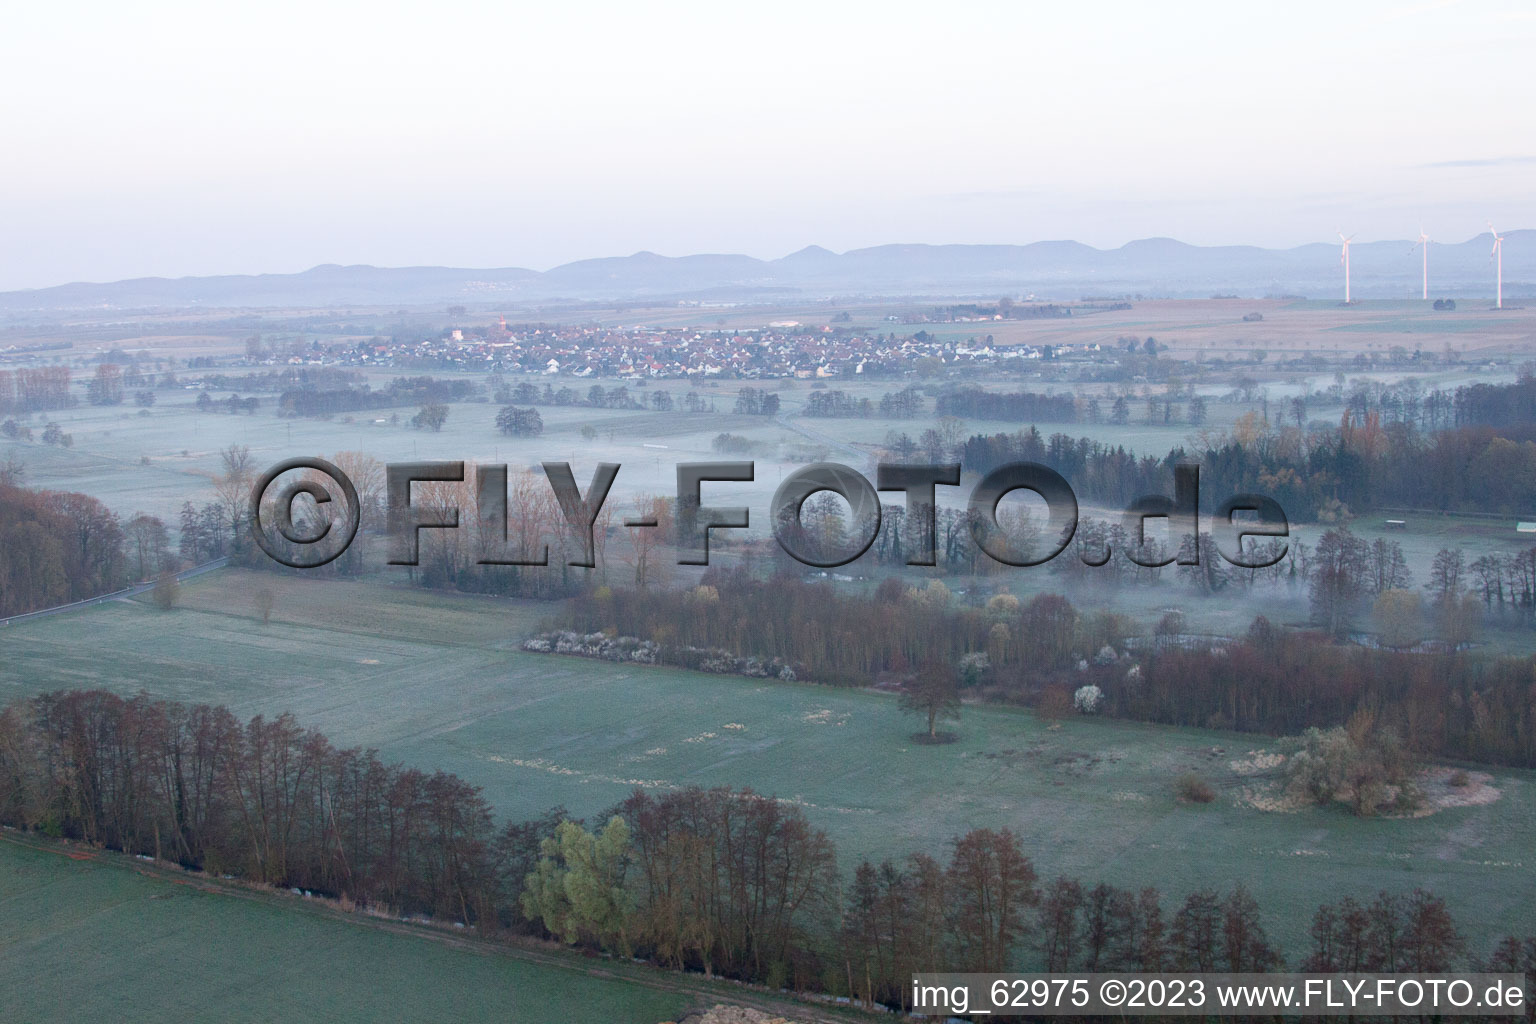 Vallée d'Otterbachtal à Minfeld dans le département Rhénanie-Palatinat, Allemagne vue du ciel